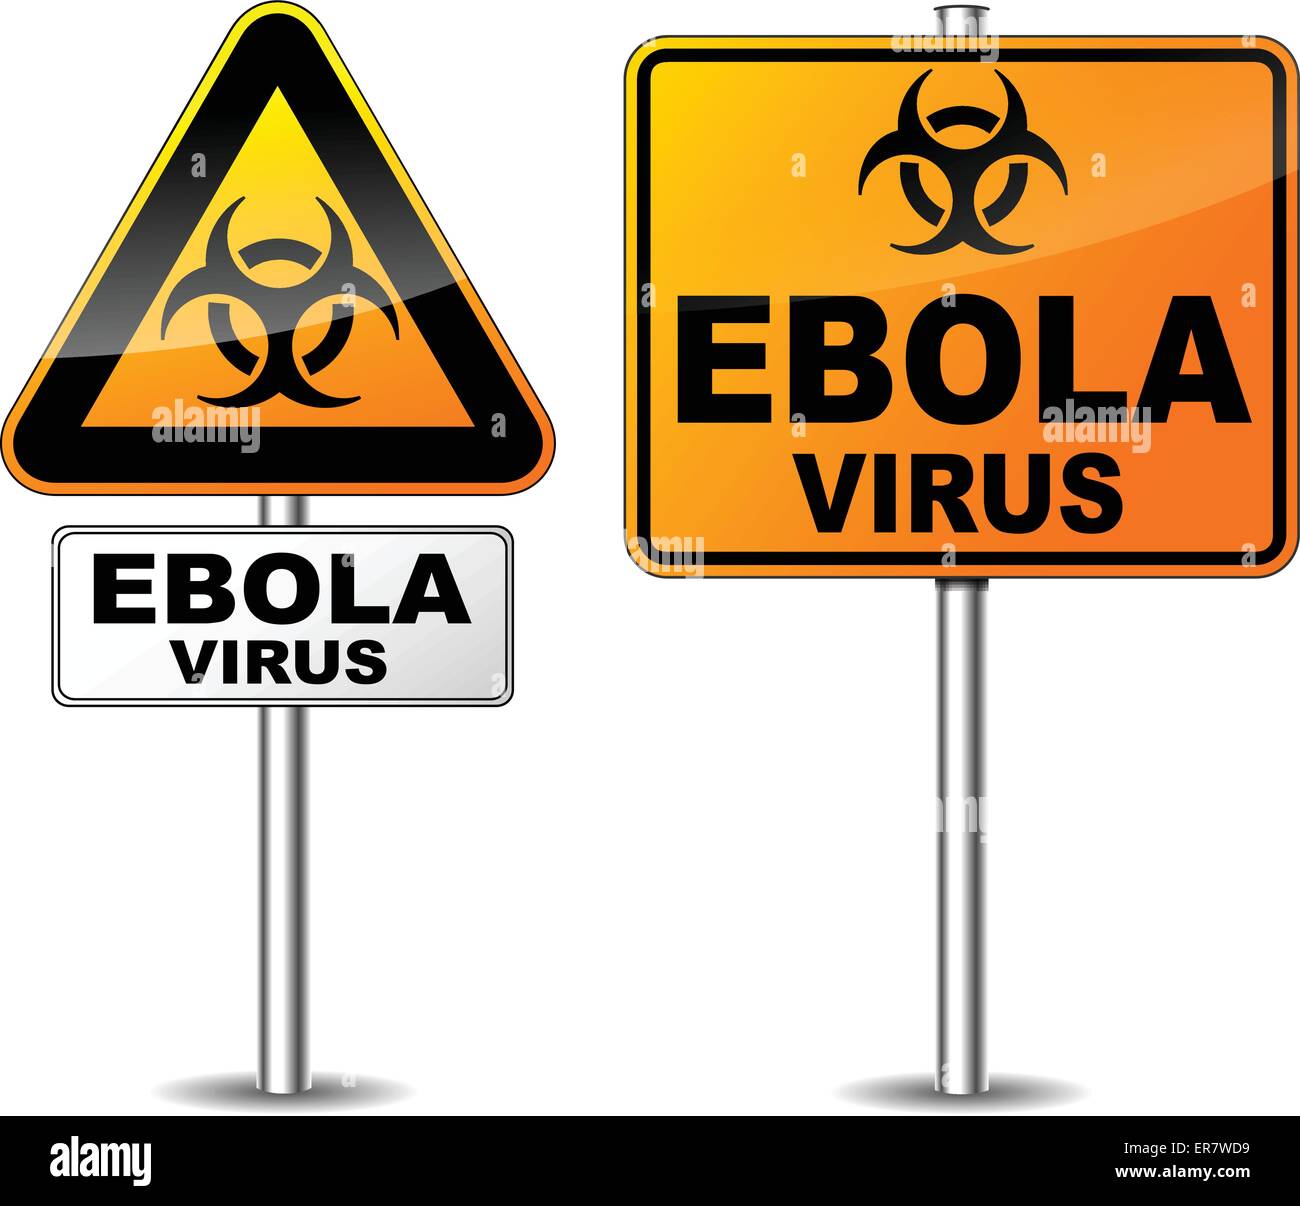 Vektor-Illustration von zwei Wegweiser des Ebola-Virus Bereich Stock Vektor